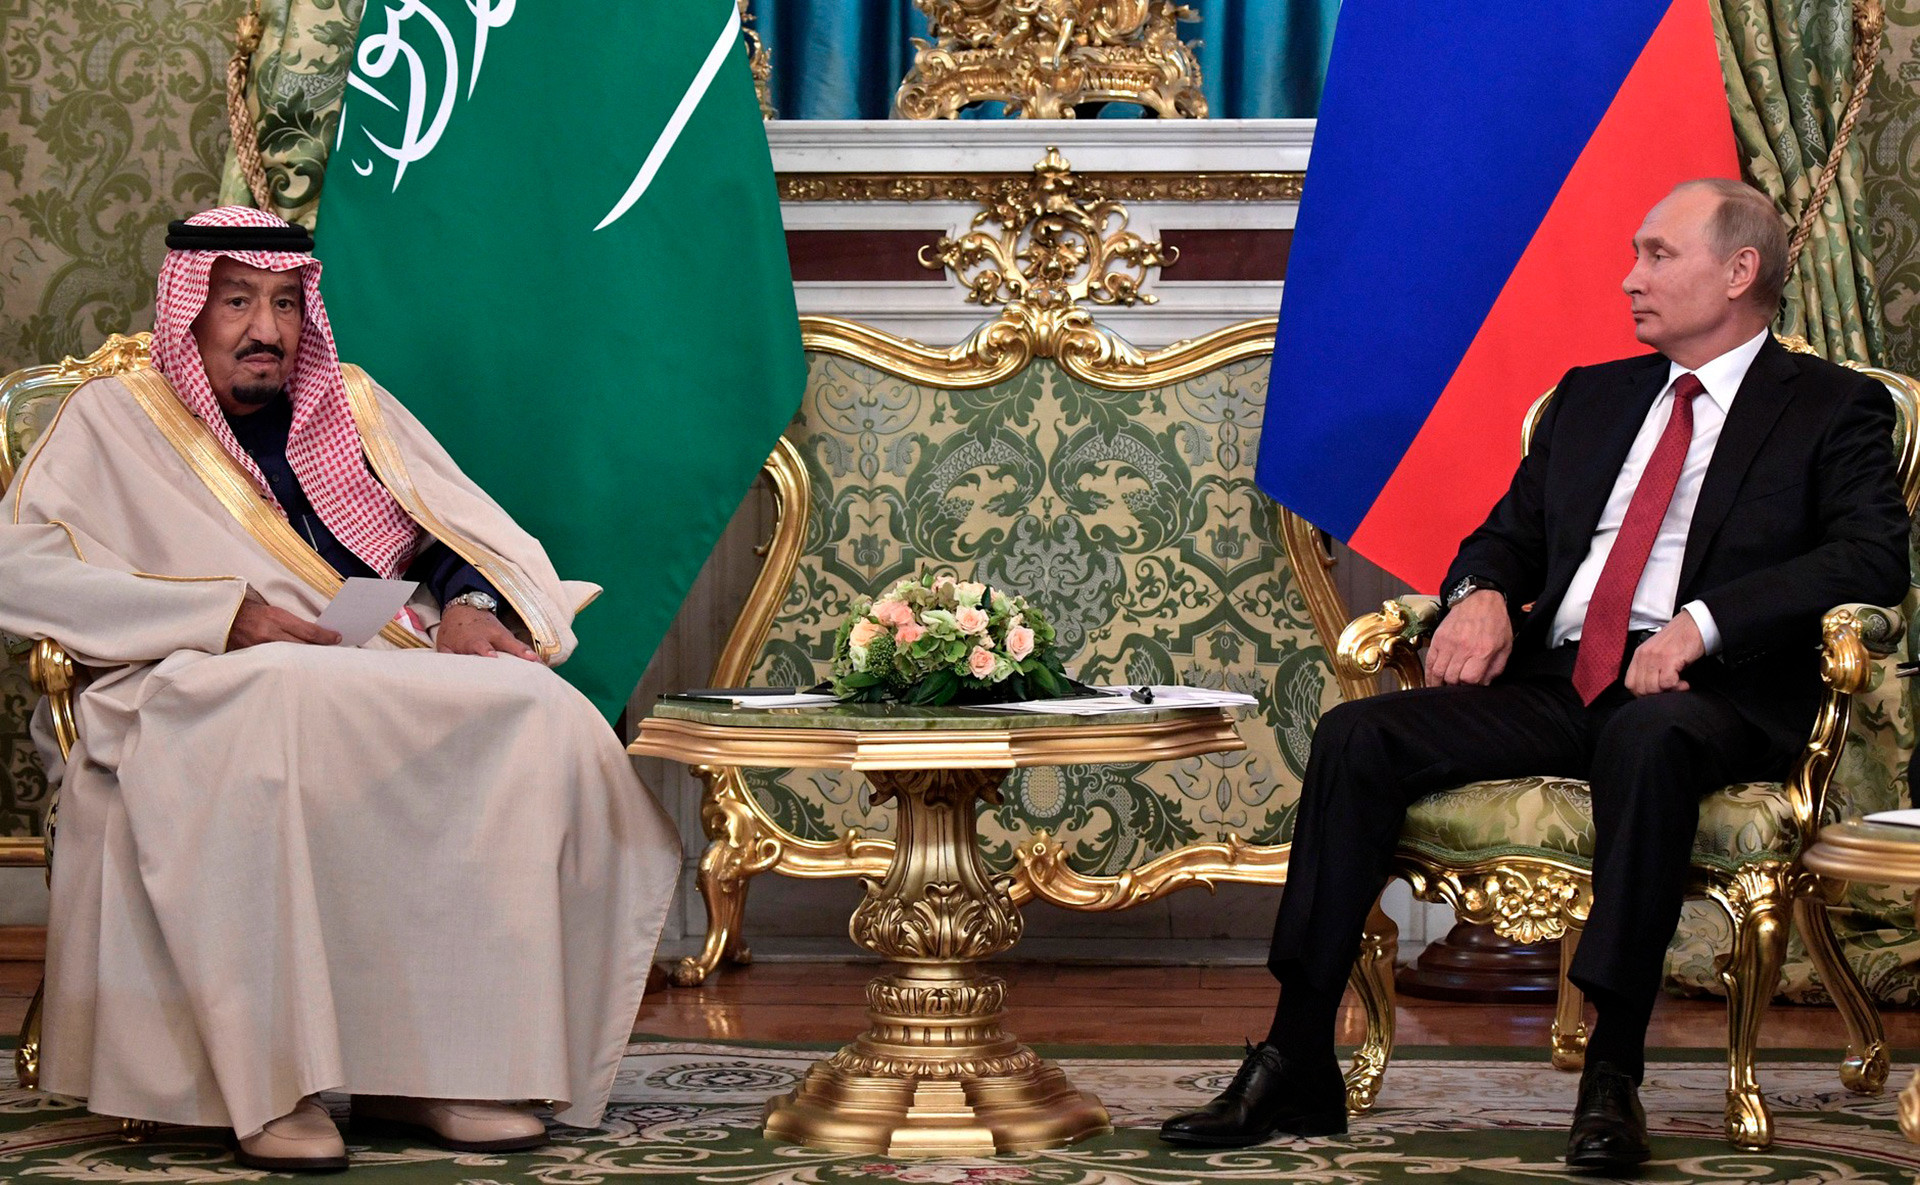 Vladimir Putin on the meeting with Salman bin Abdulaziz Al Saud on Oct. 5, 2017